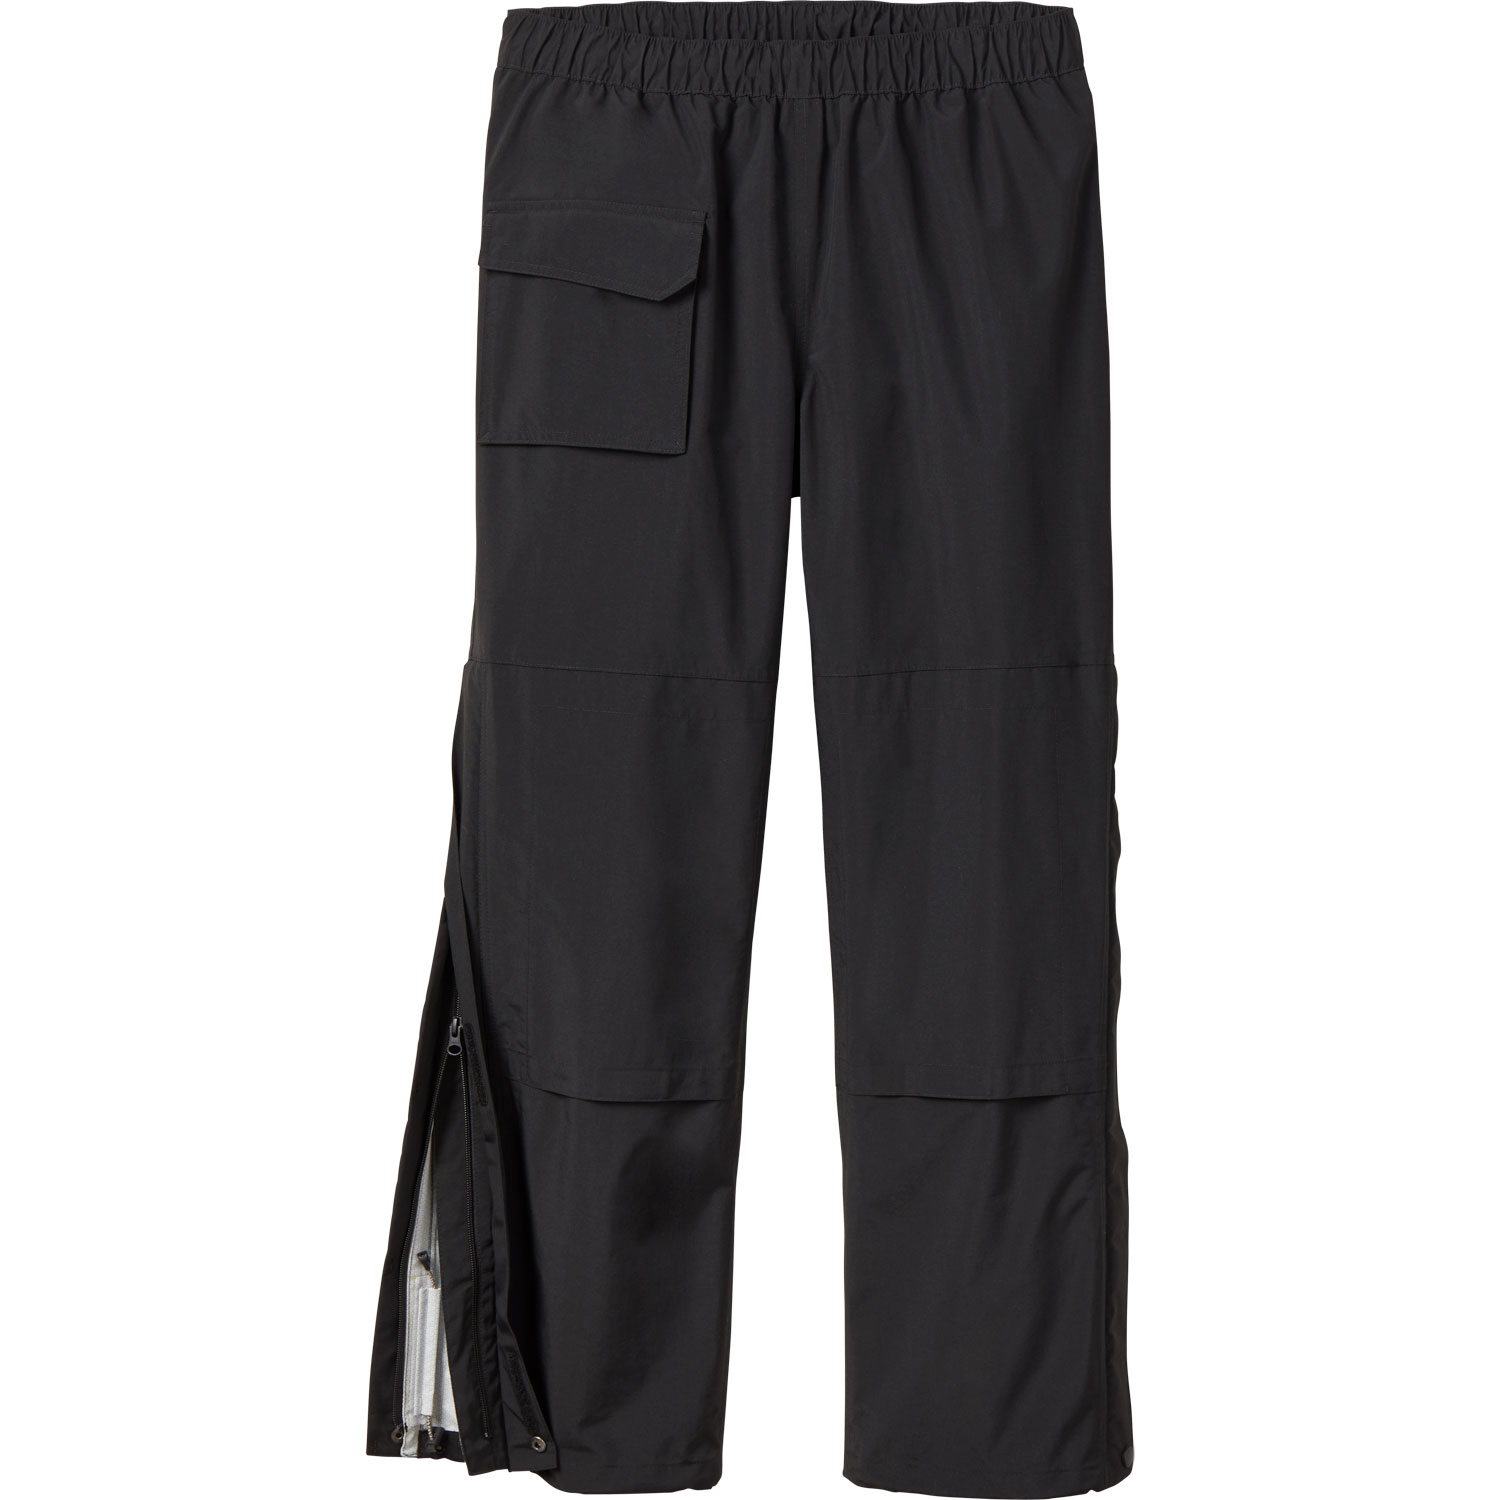 Waterproof and rain pants for work, Men's rain pants, Men's Workwear Rain  Pants